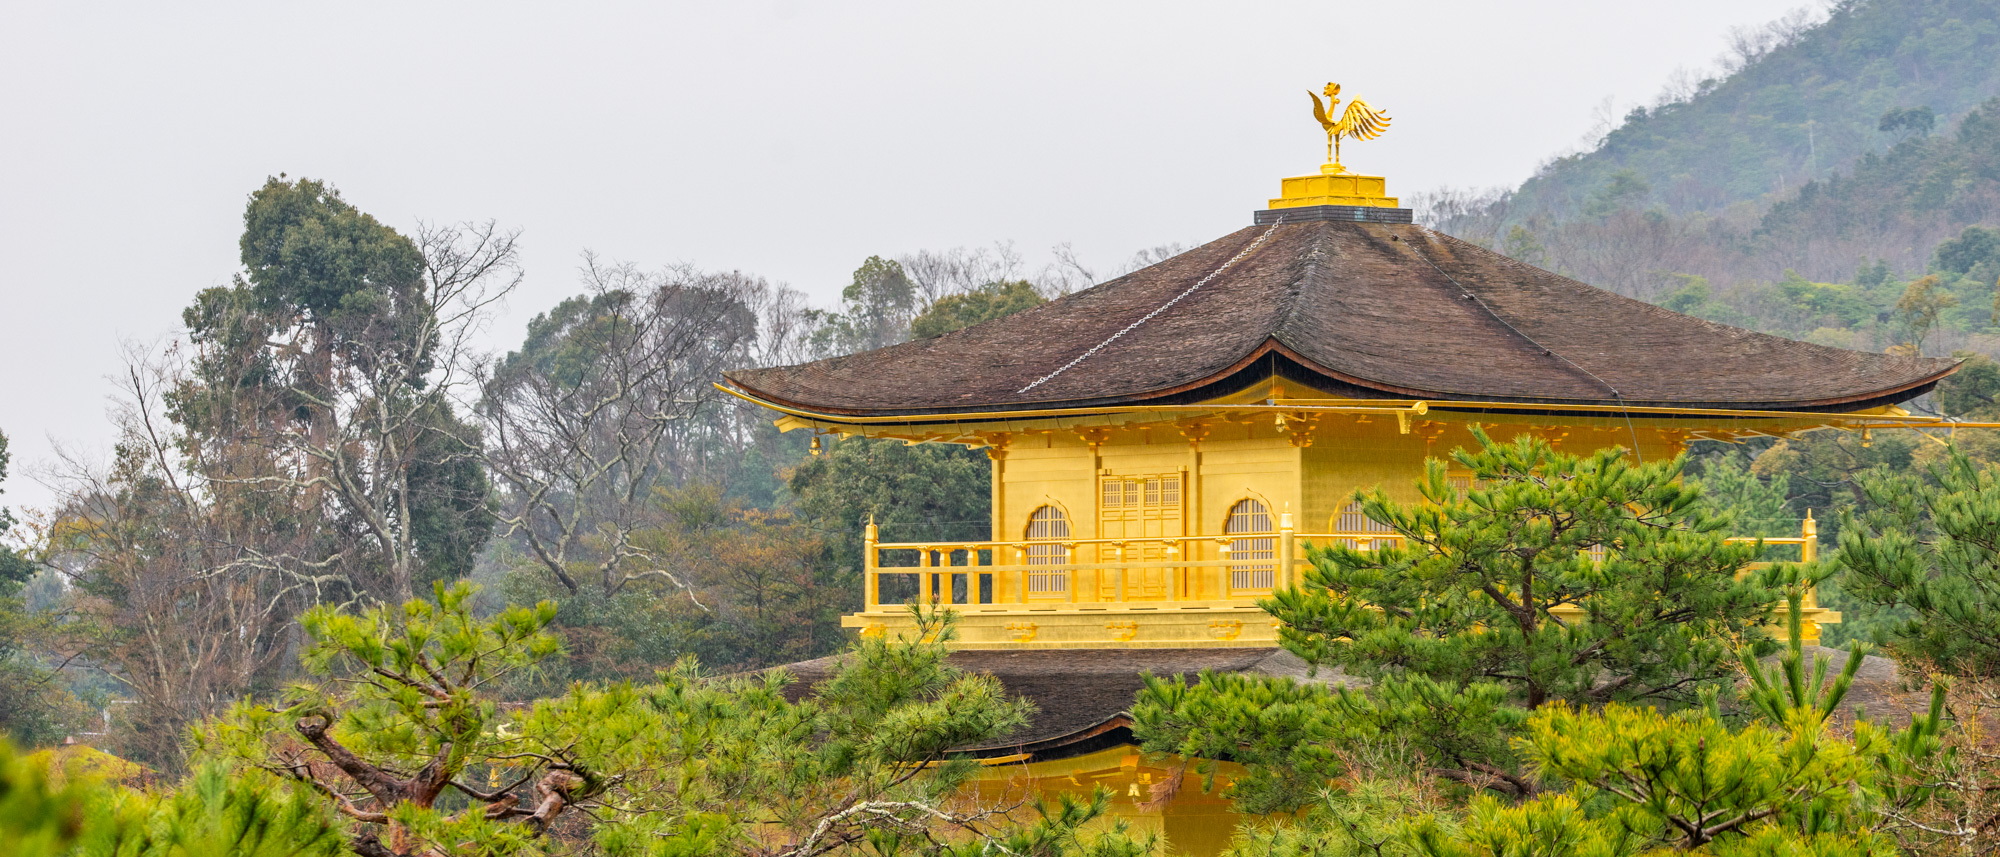 2019日本行 – 第四天雨中漫步Kyoto二条城，天满宫，龙安寺和金阁寺